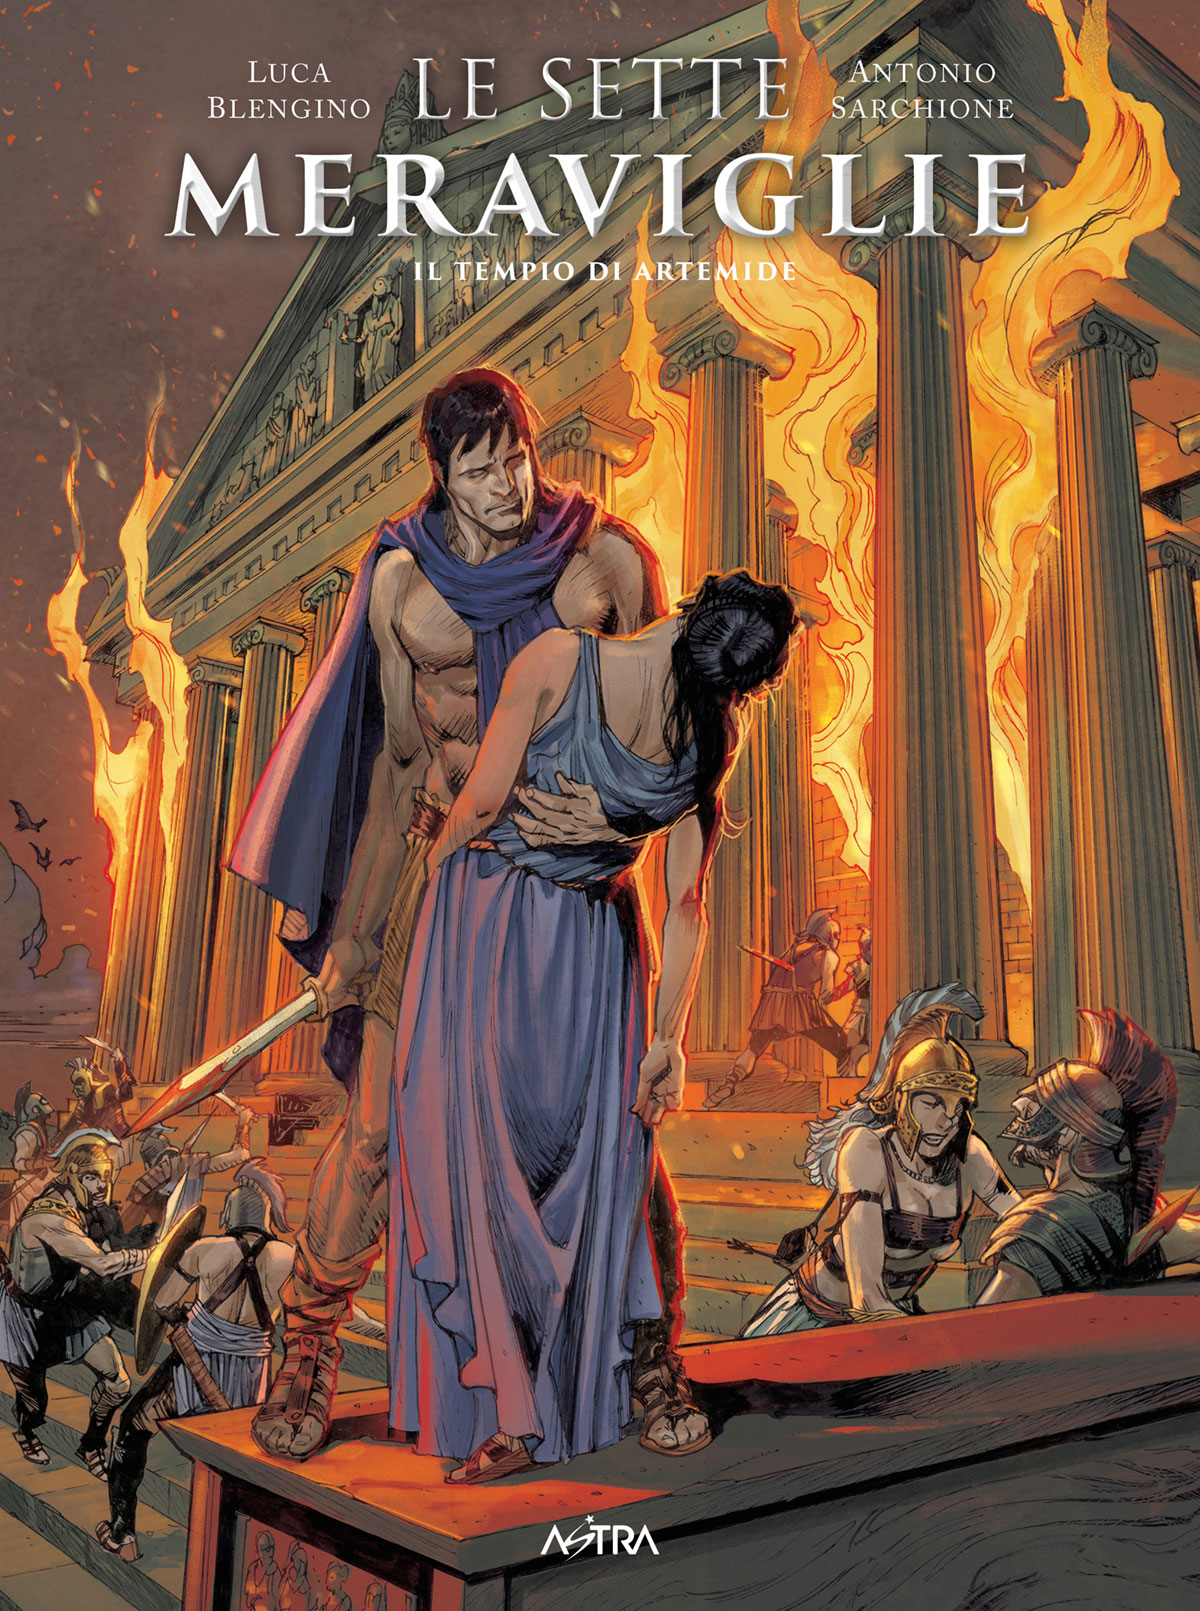 la copertina delle sette meraviglie mostra un uomo che tiene una donna priva di sensi sullo sfondo di un tempio in fiamme- nerdface